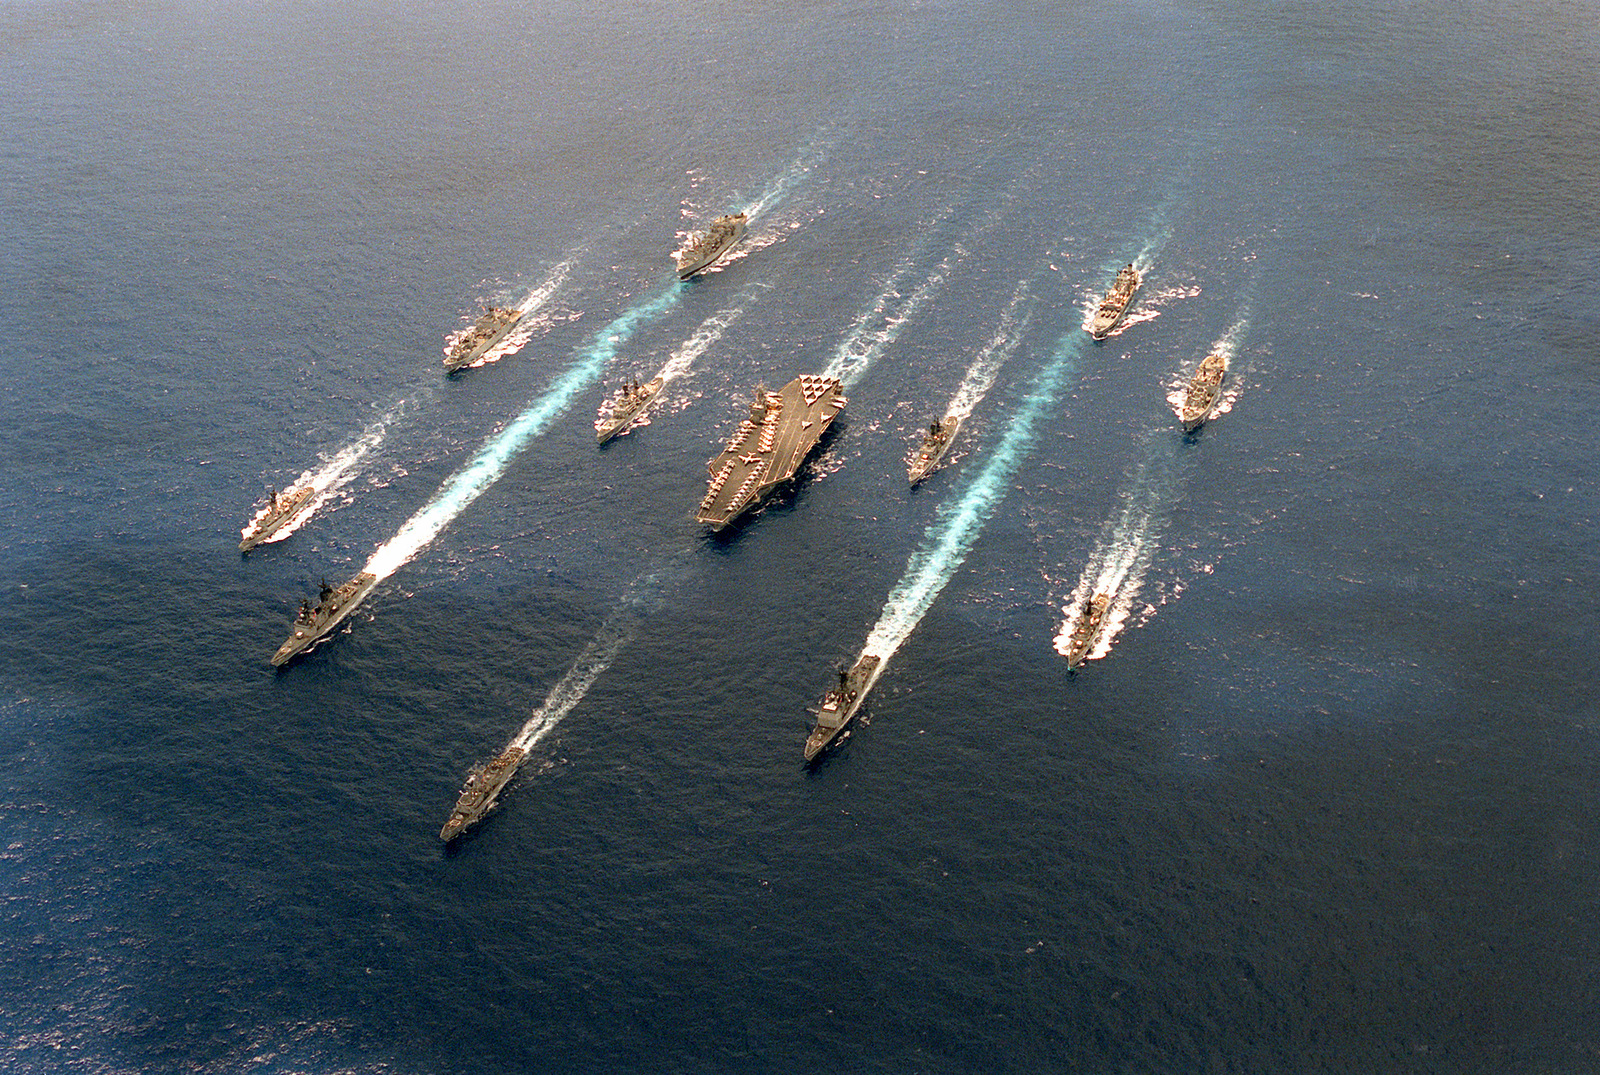 aircraft carrier battle group